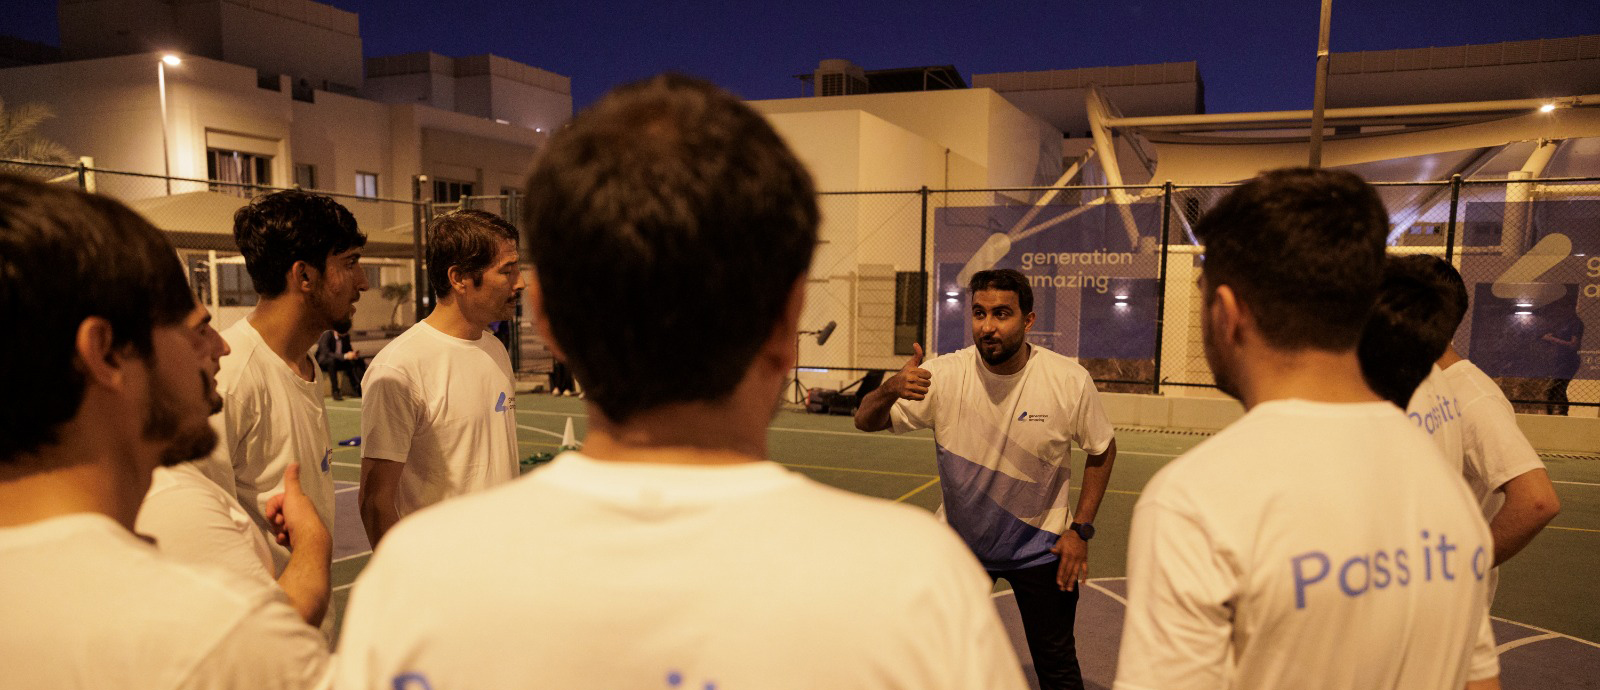 برنامج الجيل المبهر يواصل جهوده لدعم اللاجئين الأفغان في قطر